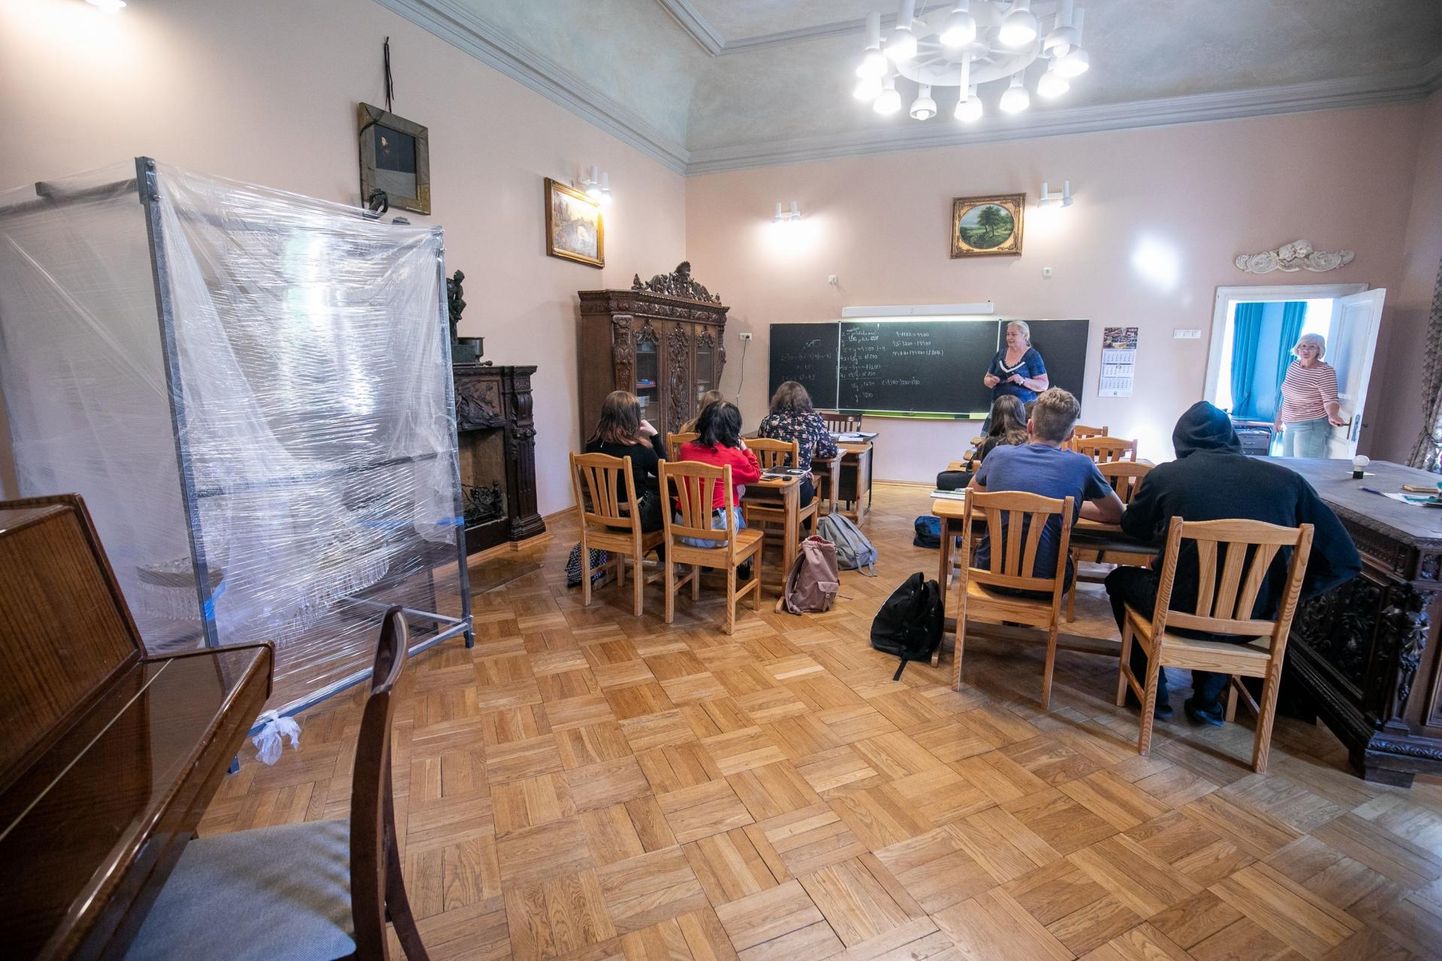 Uuendustöödele ette jäänud nikerdustega mööbel on tõstetud klassiruumi, kus Muuga kooli õpilased oma armsas majas viimaseid teadmisi omandavad.